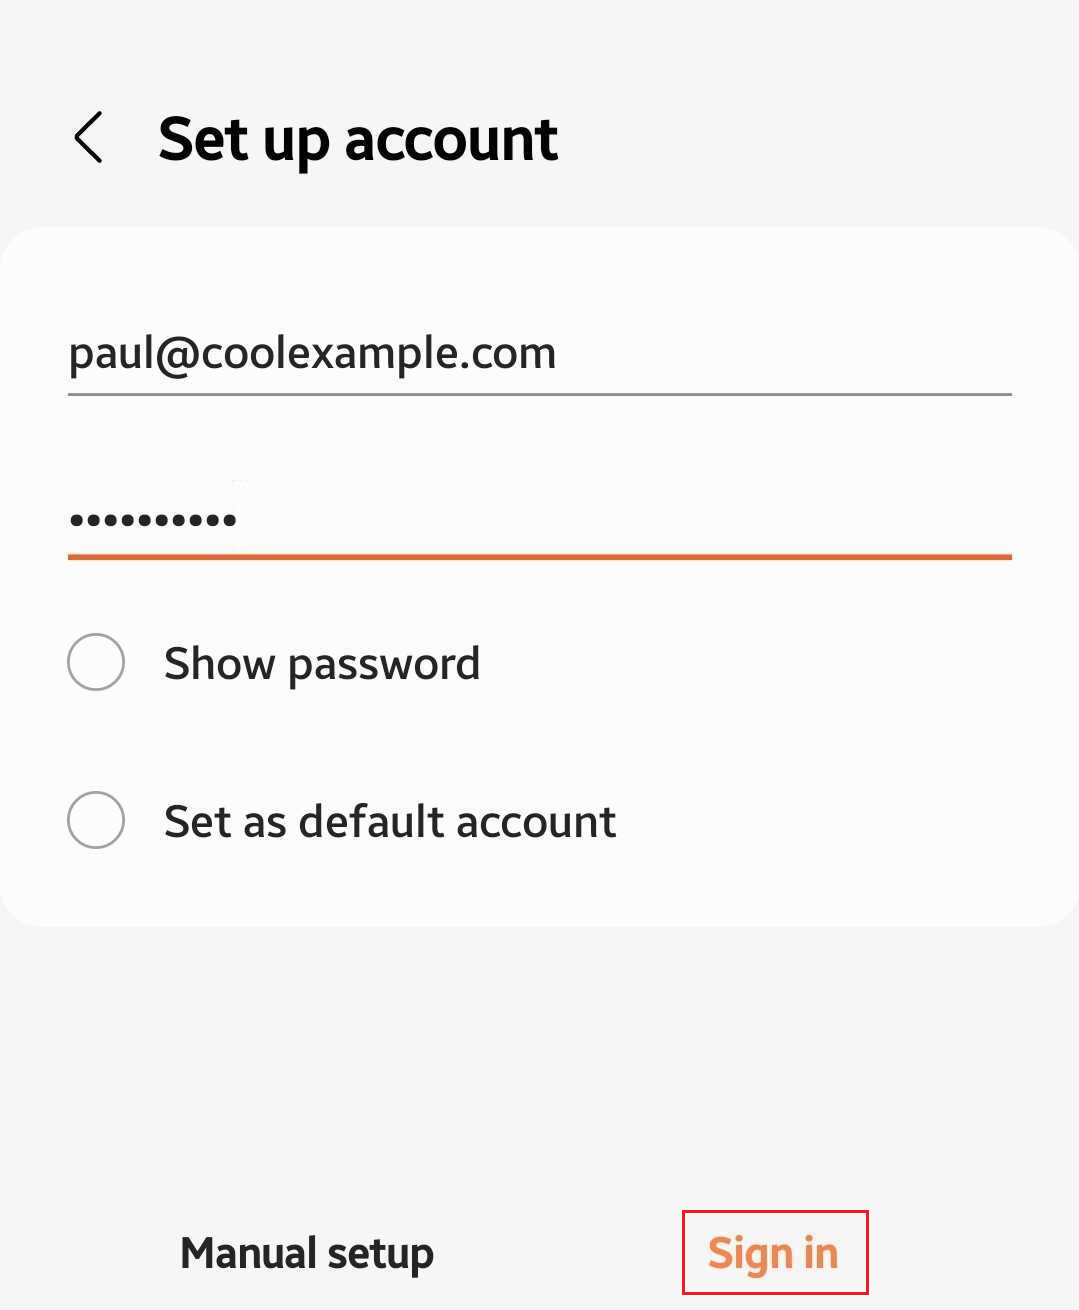 輸入 email 地址、密碼並按一下「登入」